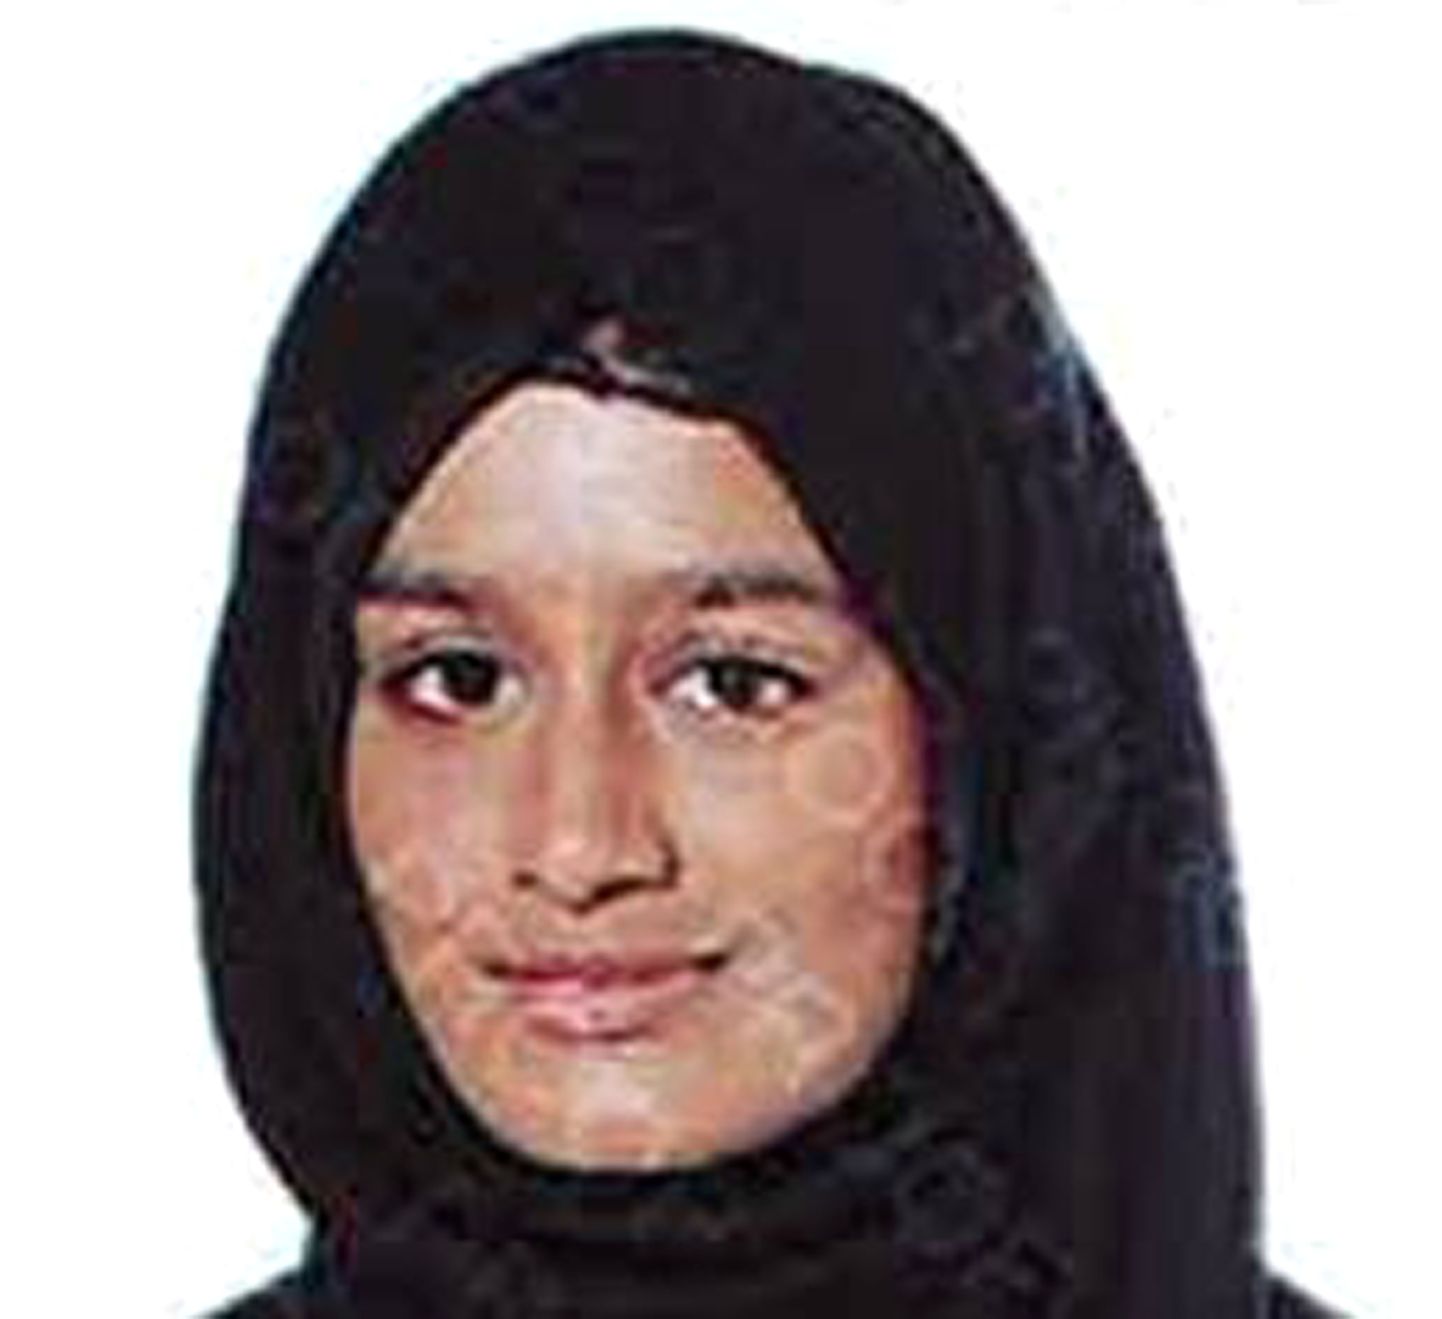 Londoni koolitüdruk Shamima Begum liitus islamistidega 15-aastasena.